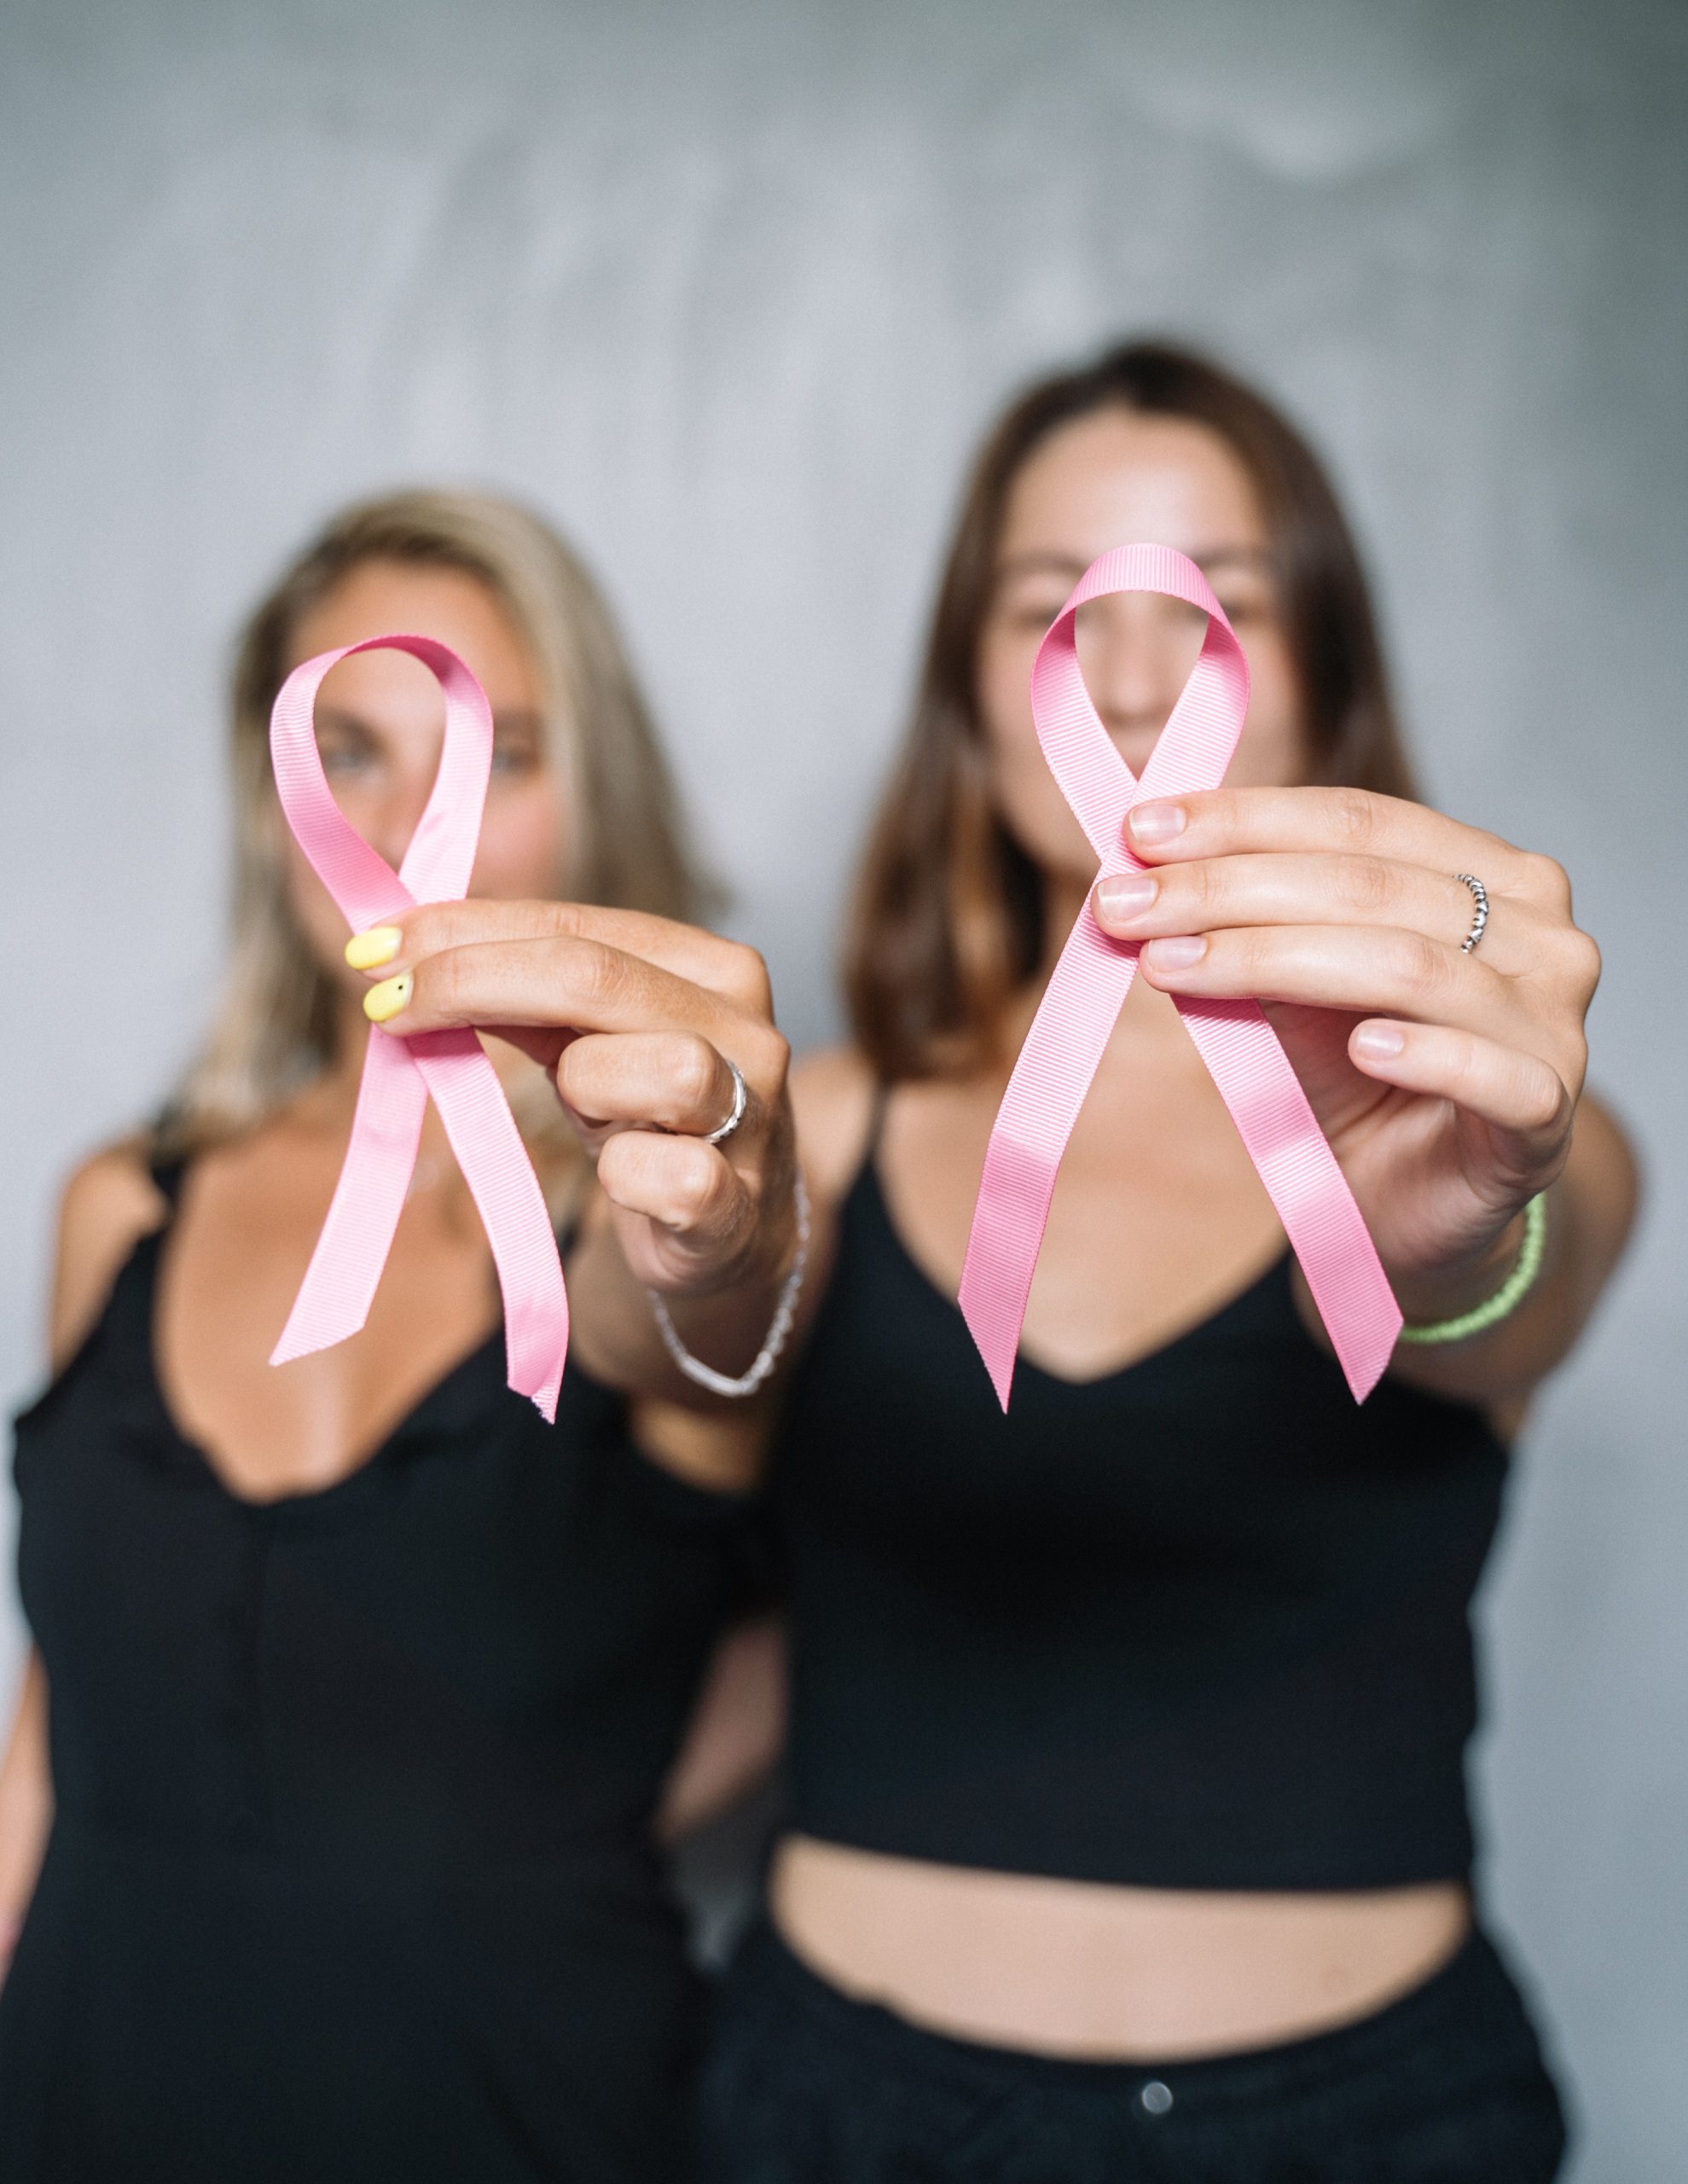 Ο Όμιλος Ιατρικού Αθηνών προσφέρει εξετάσεις προληπτικού ελέγχου για τον καρκίνο του μαστού σε ειδικές τιμές